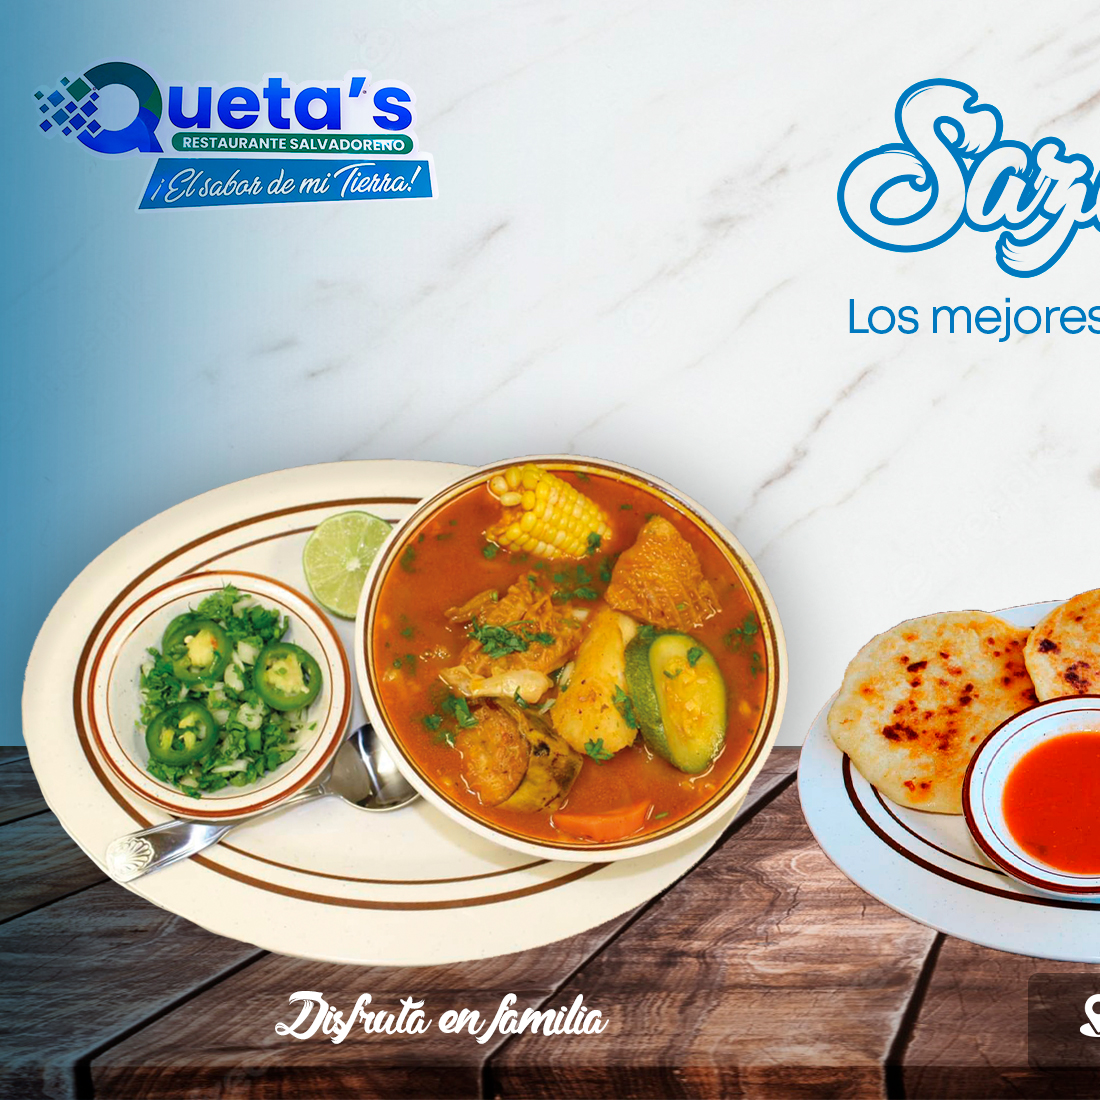 Queta’s Restaurant